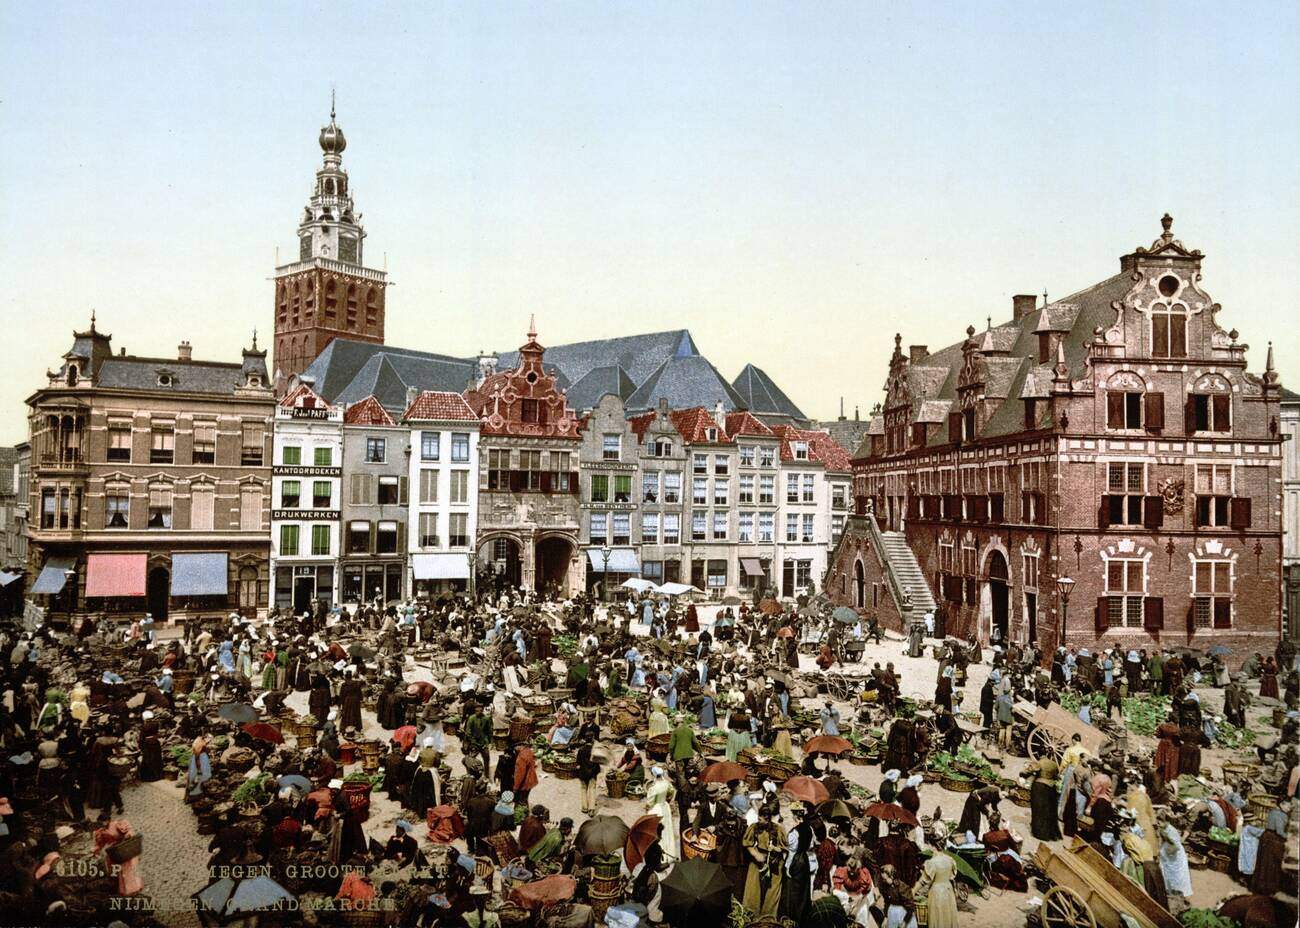 The great market, Nymegen (i.e. Nijmegen), Holland, 1900